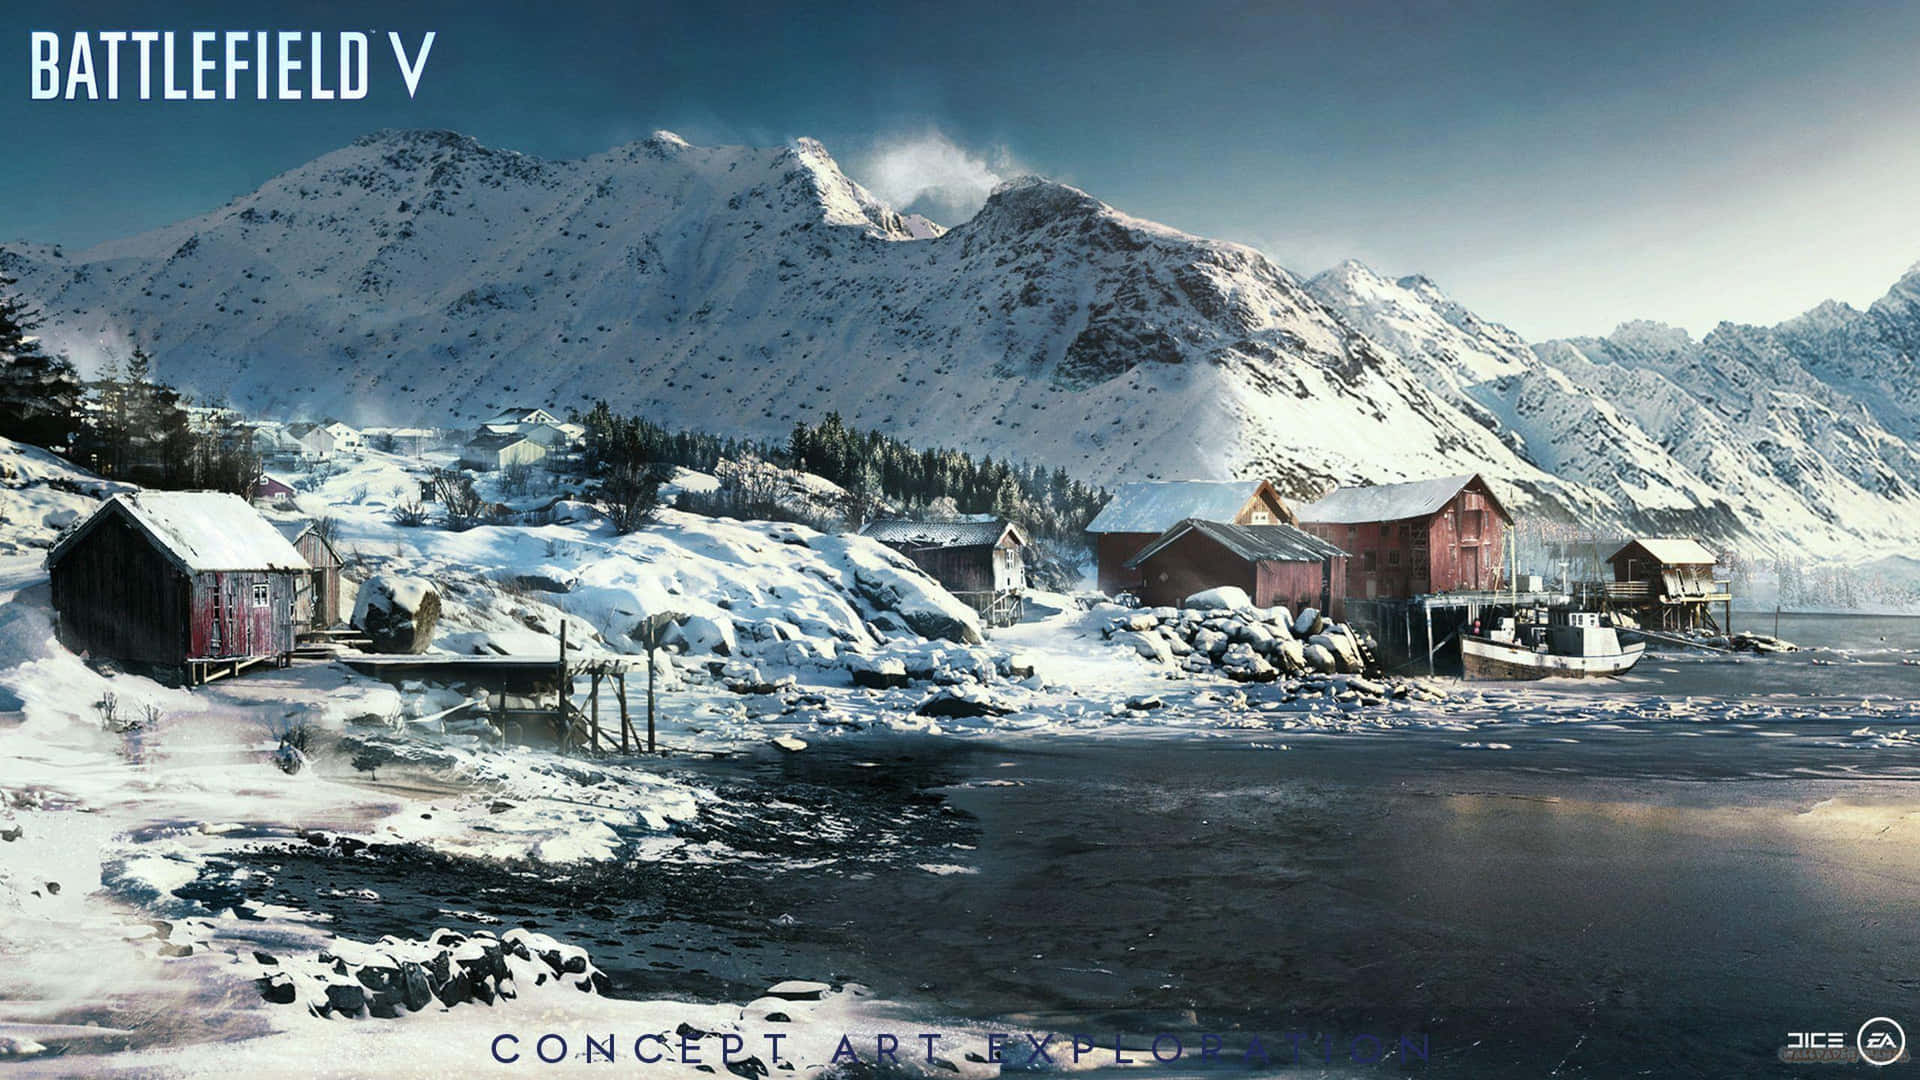 Battlefieldv - Eine Schneebedeckte Szene Mit Einem Berg Und Häusern.